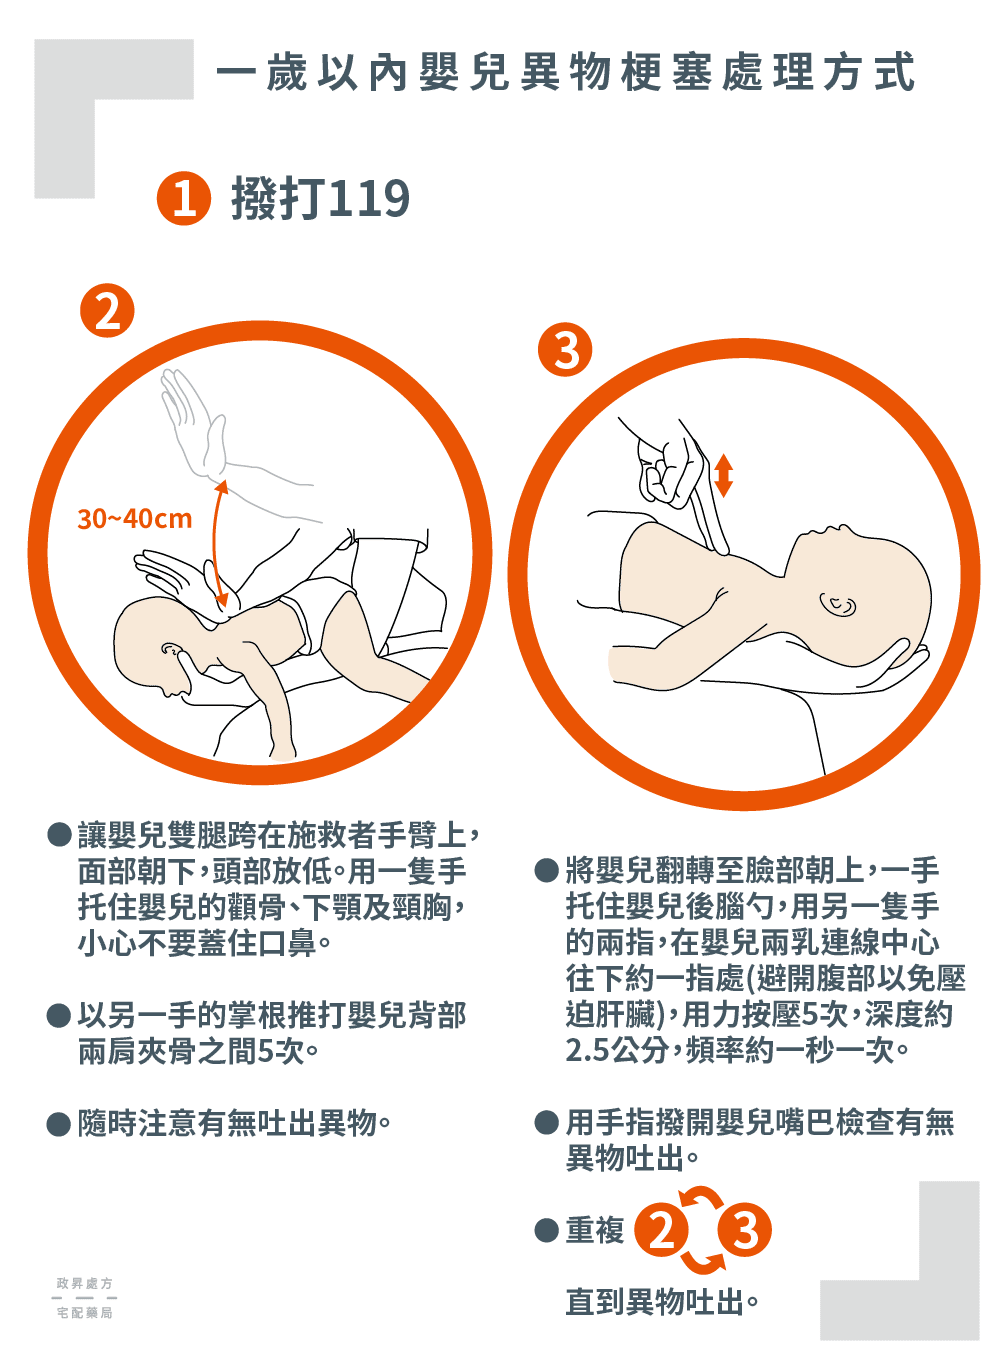 讓嬰兒跨坐於手臂上拍打背部或躺臥於手臂以兩指壓胸